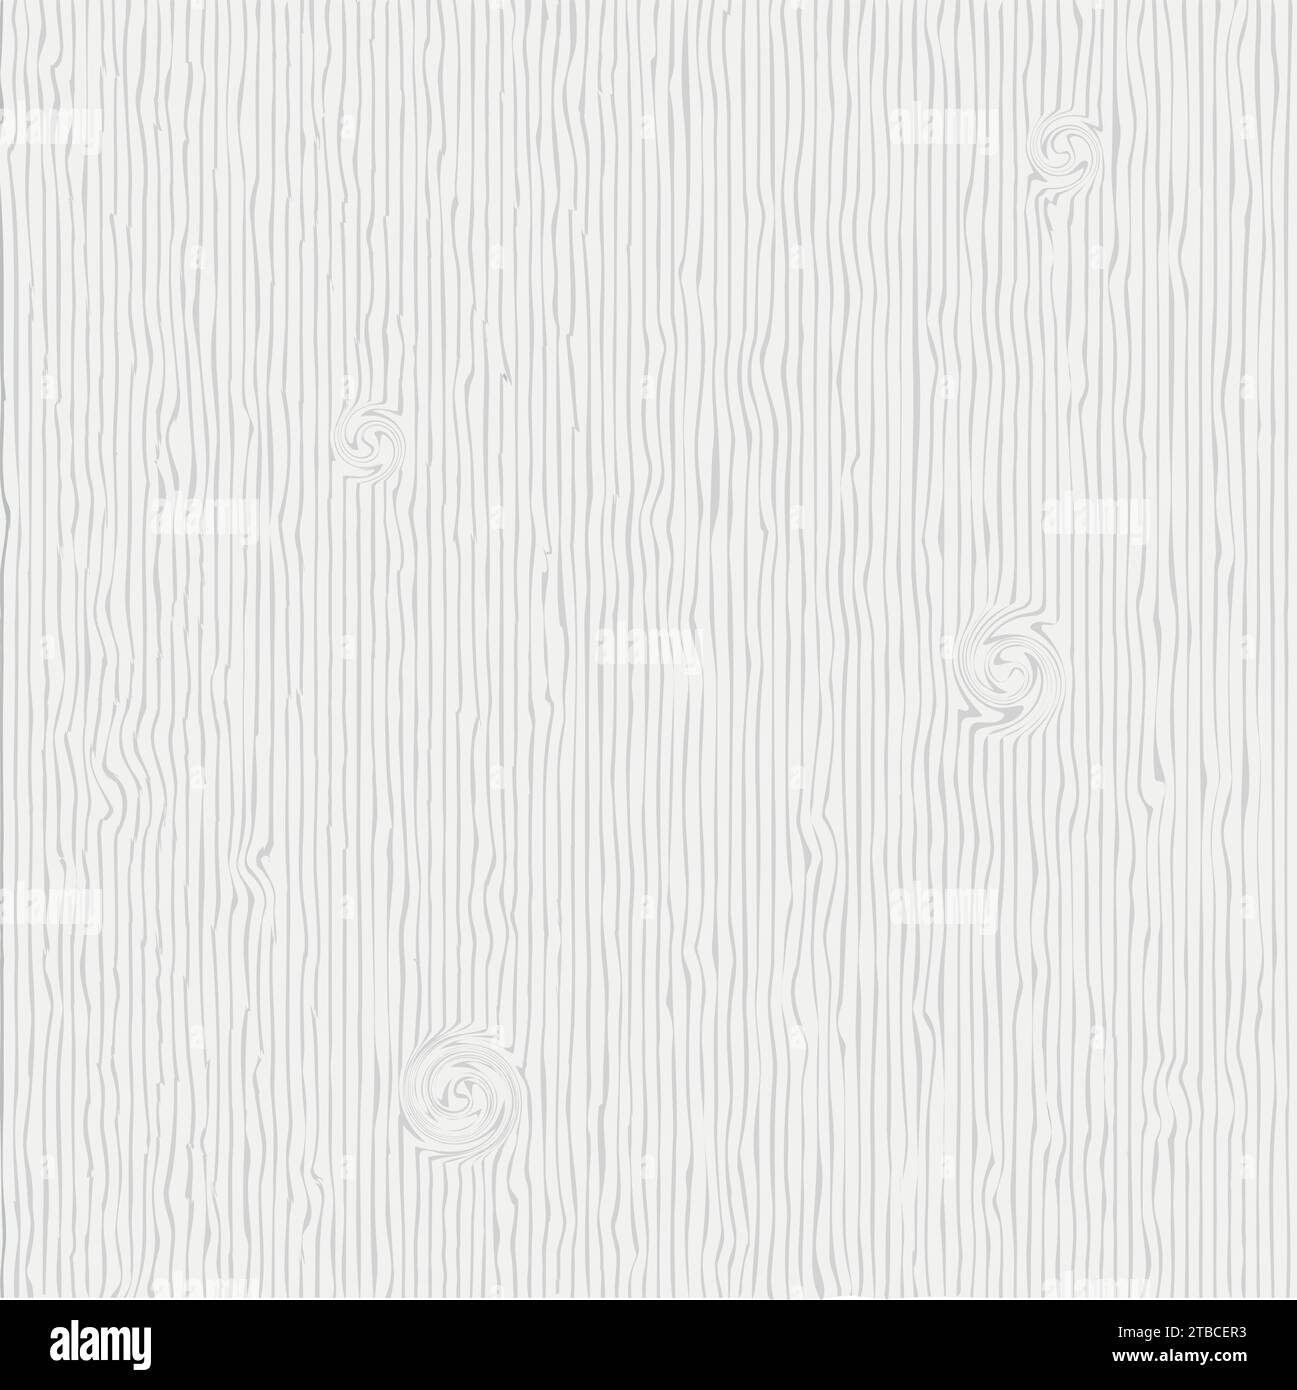 Wooden light grey texture. Vector wood background Stock Vector